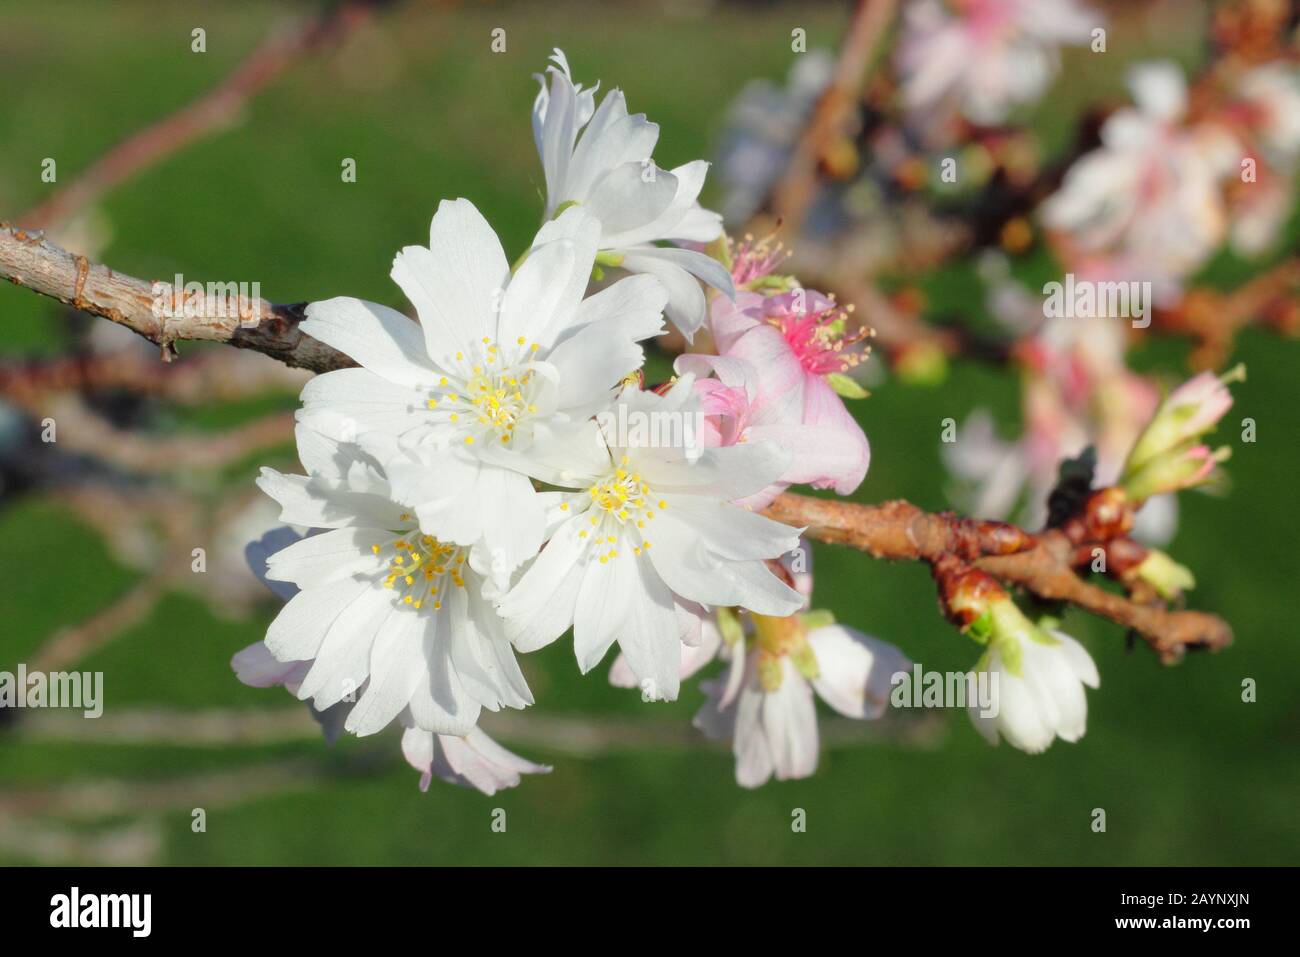 Prunus × subhirtella 'Autumnalis'. Blossoms of Winter flowering cherry in January. UK Stock Photo